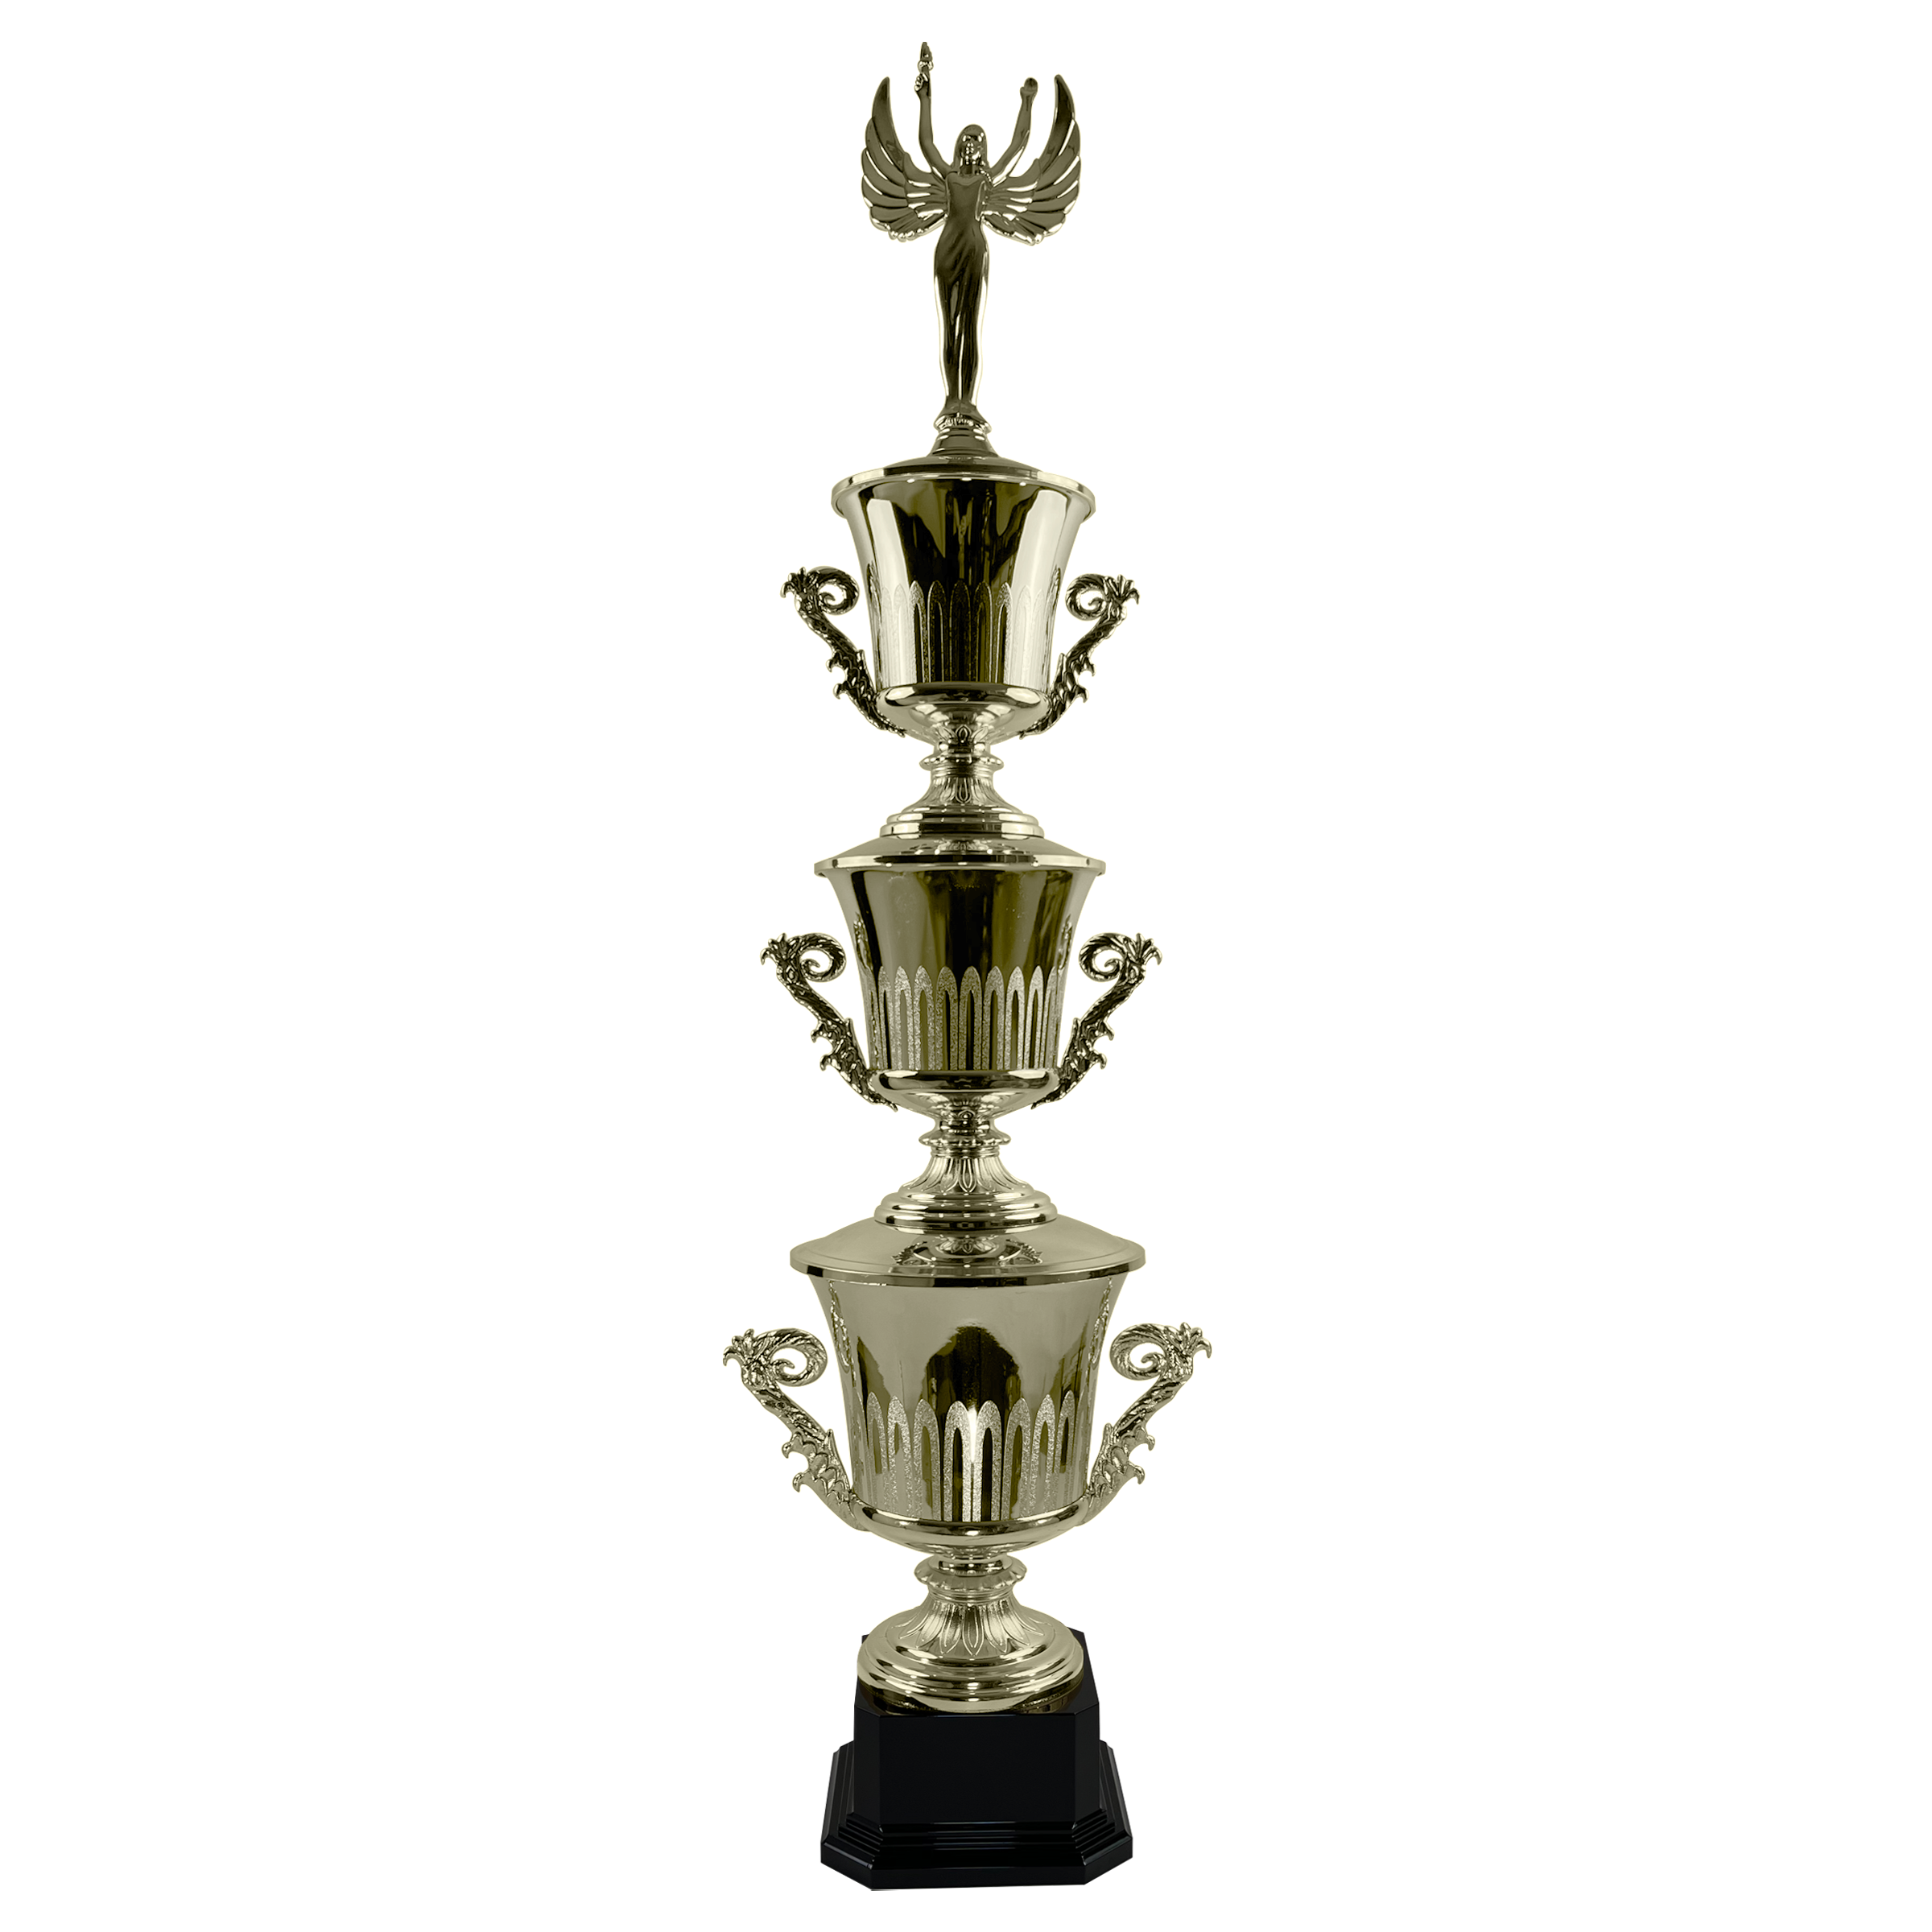 Trofeo Copa Trofeo Presupuesto Premio Barato para todos los Deportes -  Trofeos C